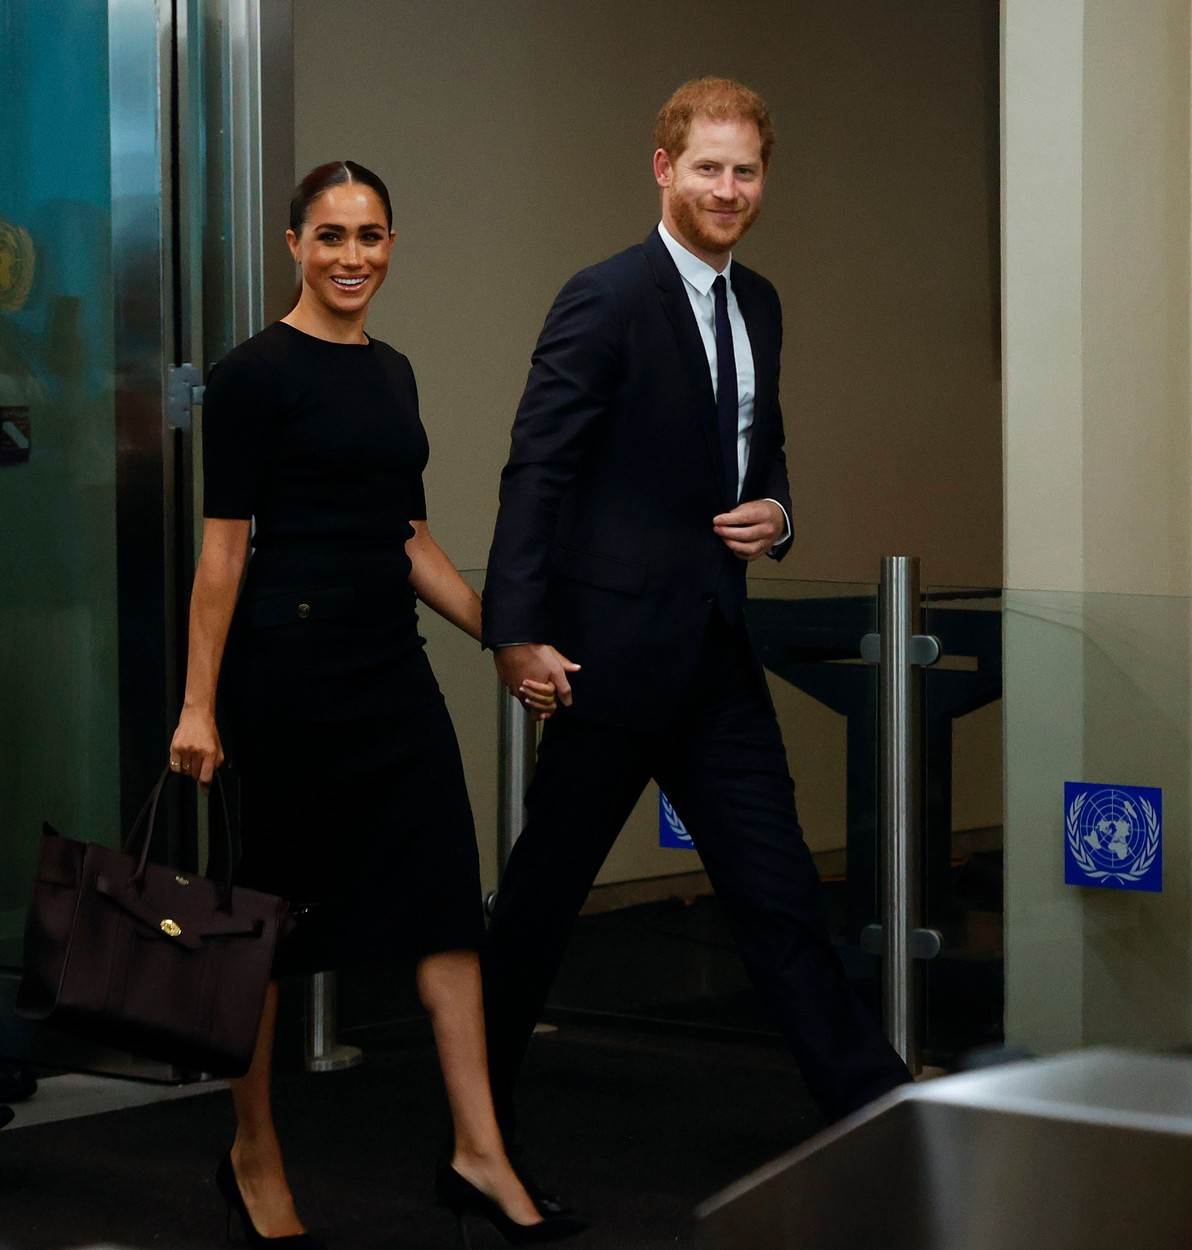 Princ Harry i Meghan Markle pojavili su se u sjedištu Ujedinjenih naroda u New Yorku.